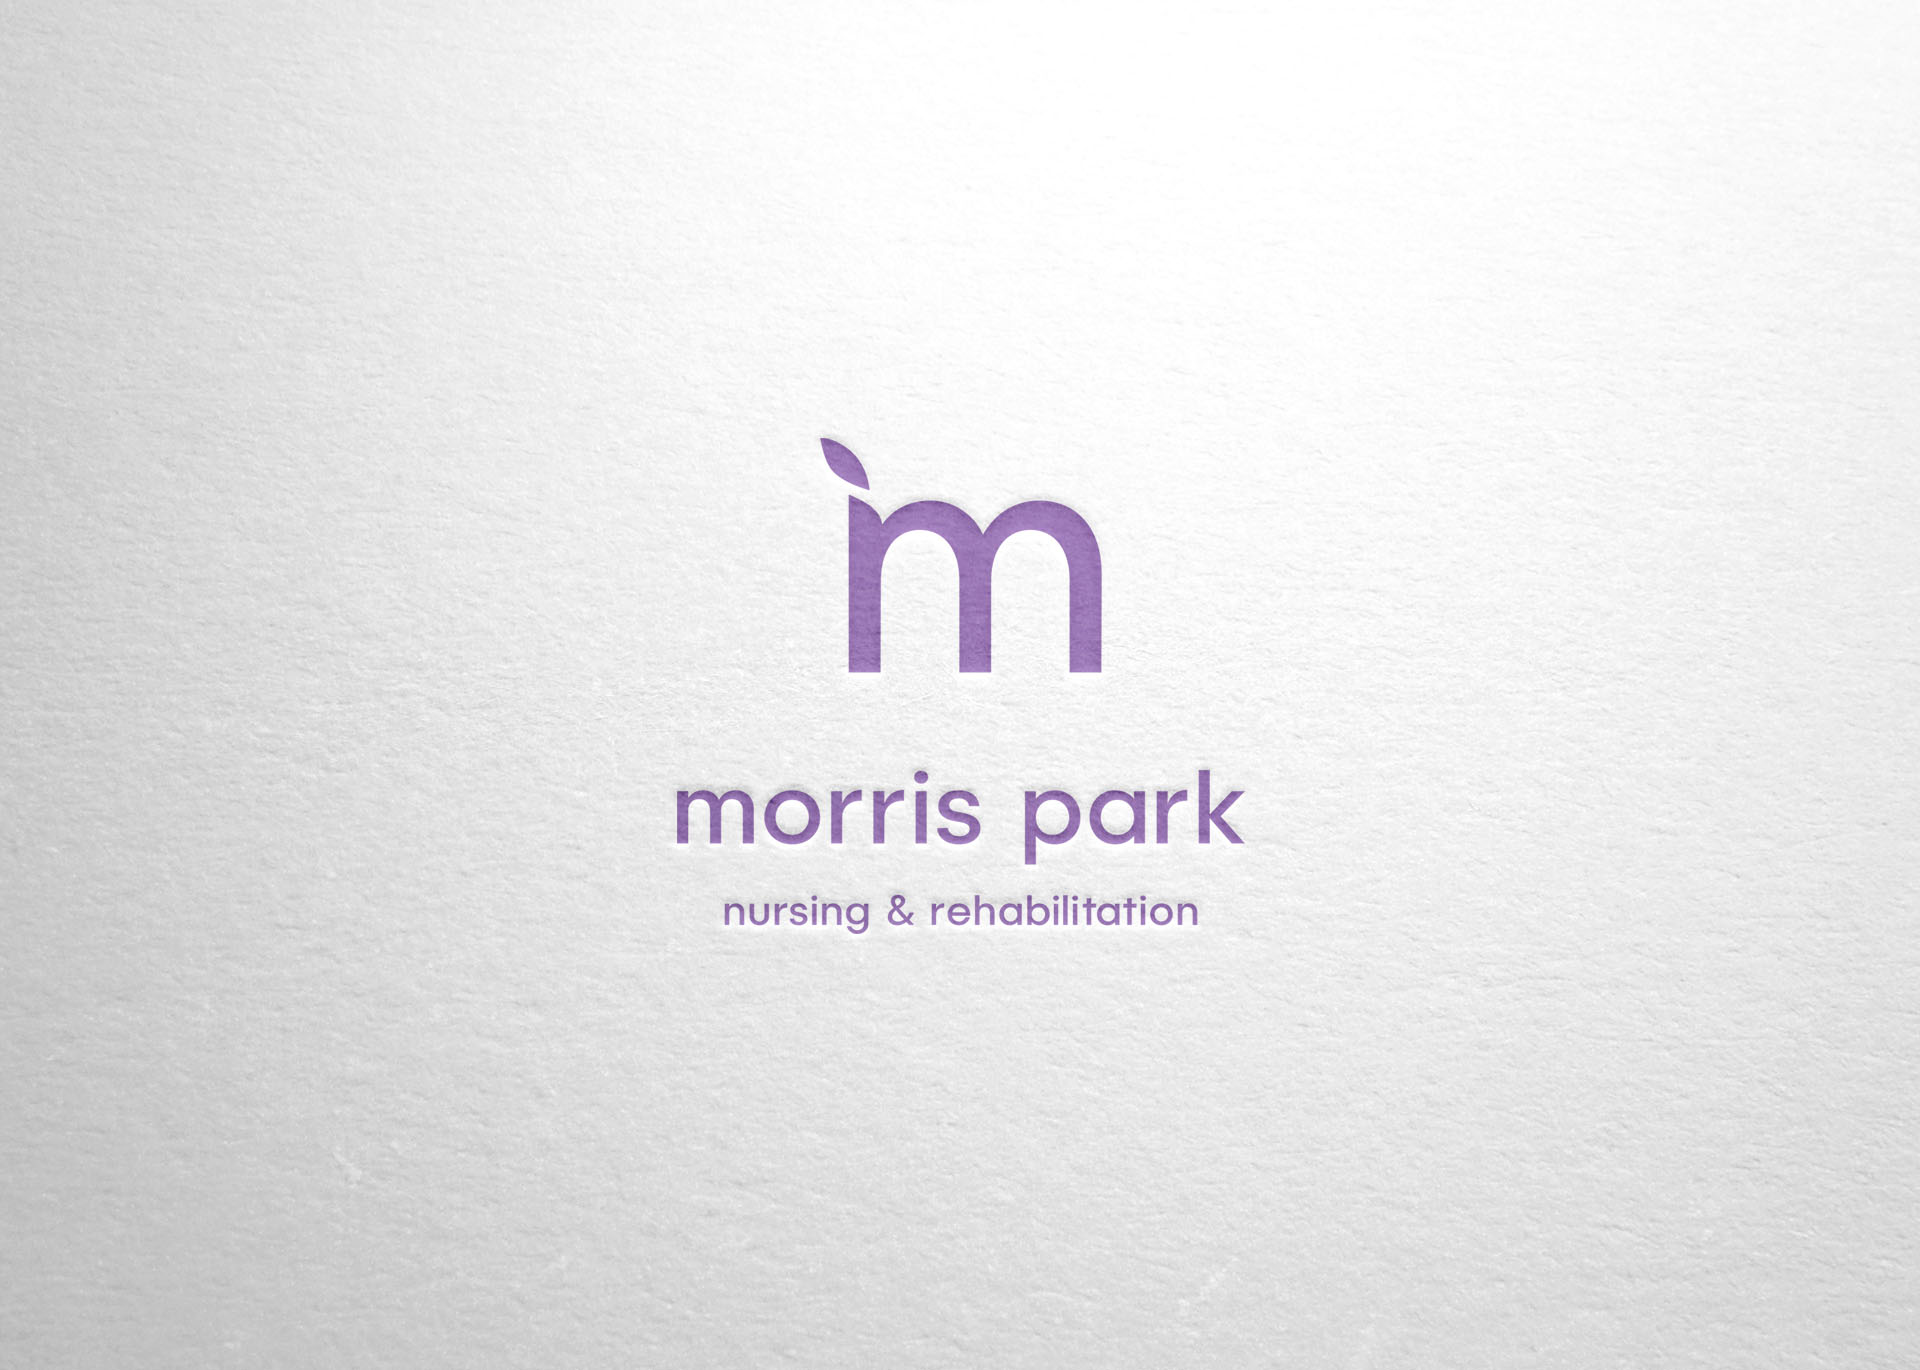 MorrisPark_1 new c